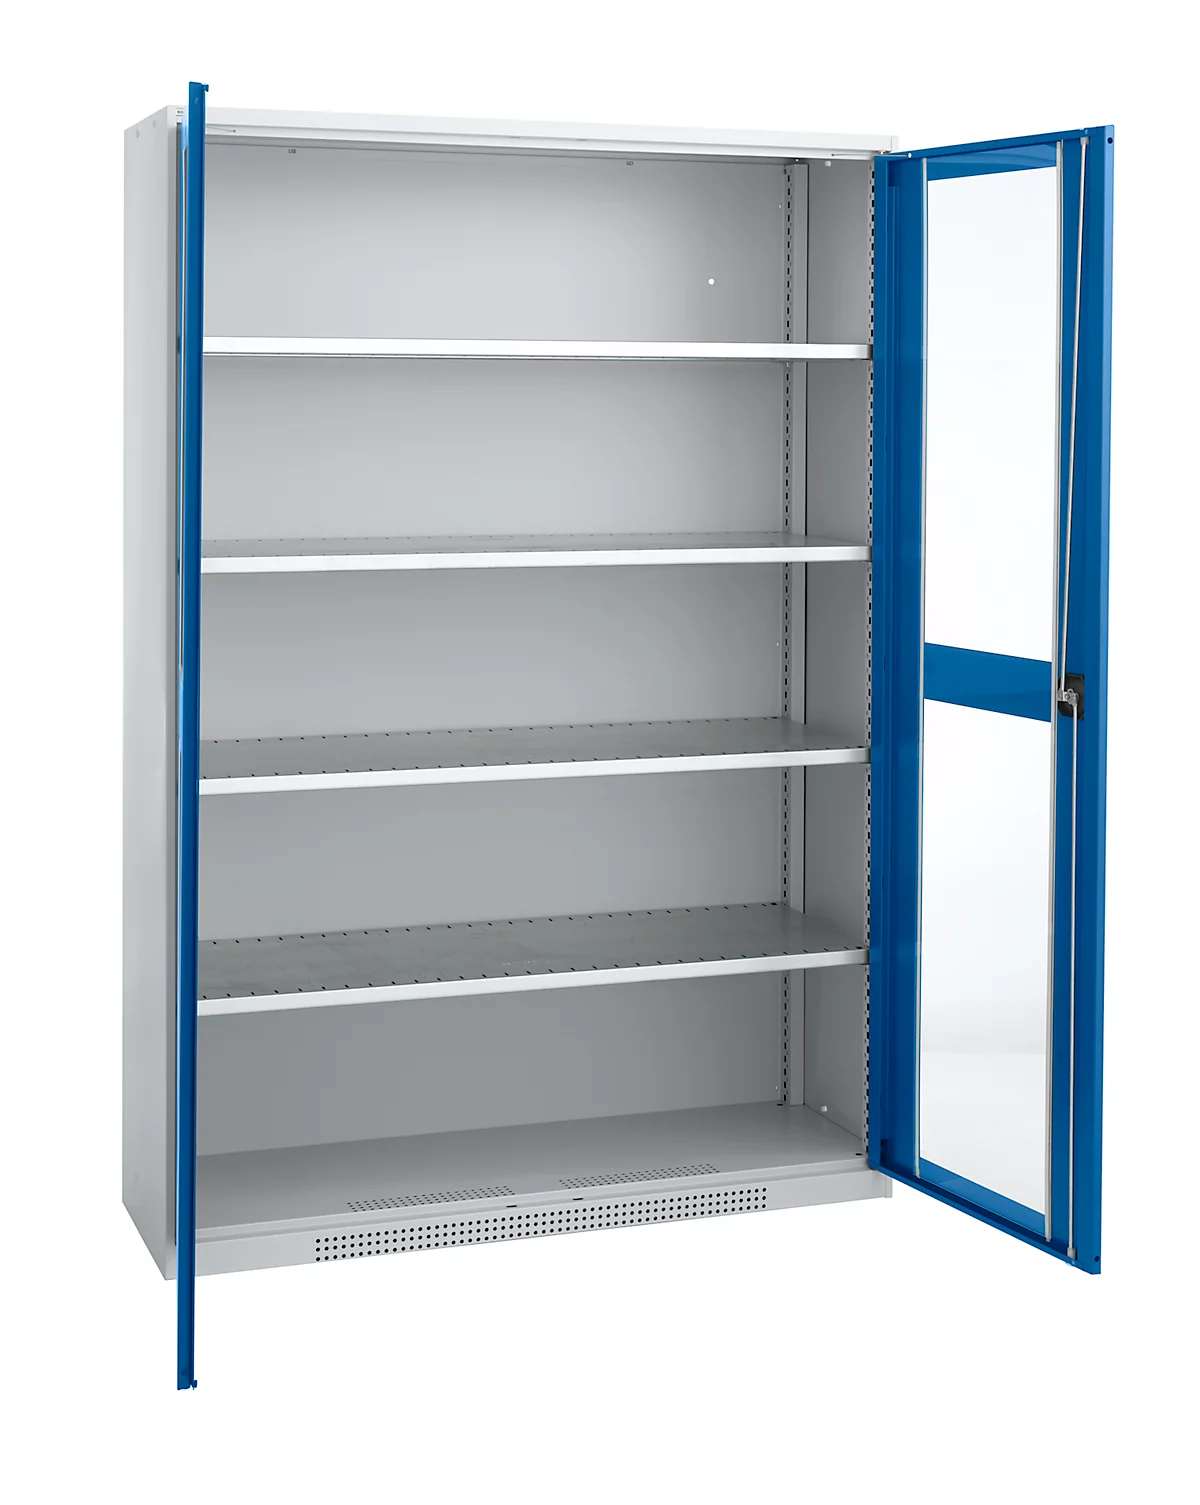 Schäfer Shop Genius armario de dos puertas FS, acero, mirilla, agujeros de ventilación, An 1343 x P 520 x Al 1950 mm, 5 OH, aluminio blanco/azul genciana, hasta 750 kg 